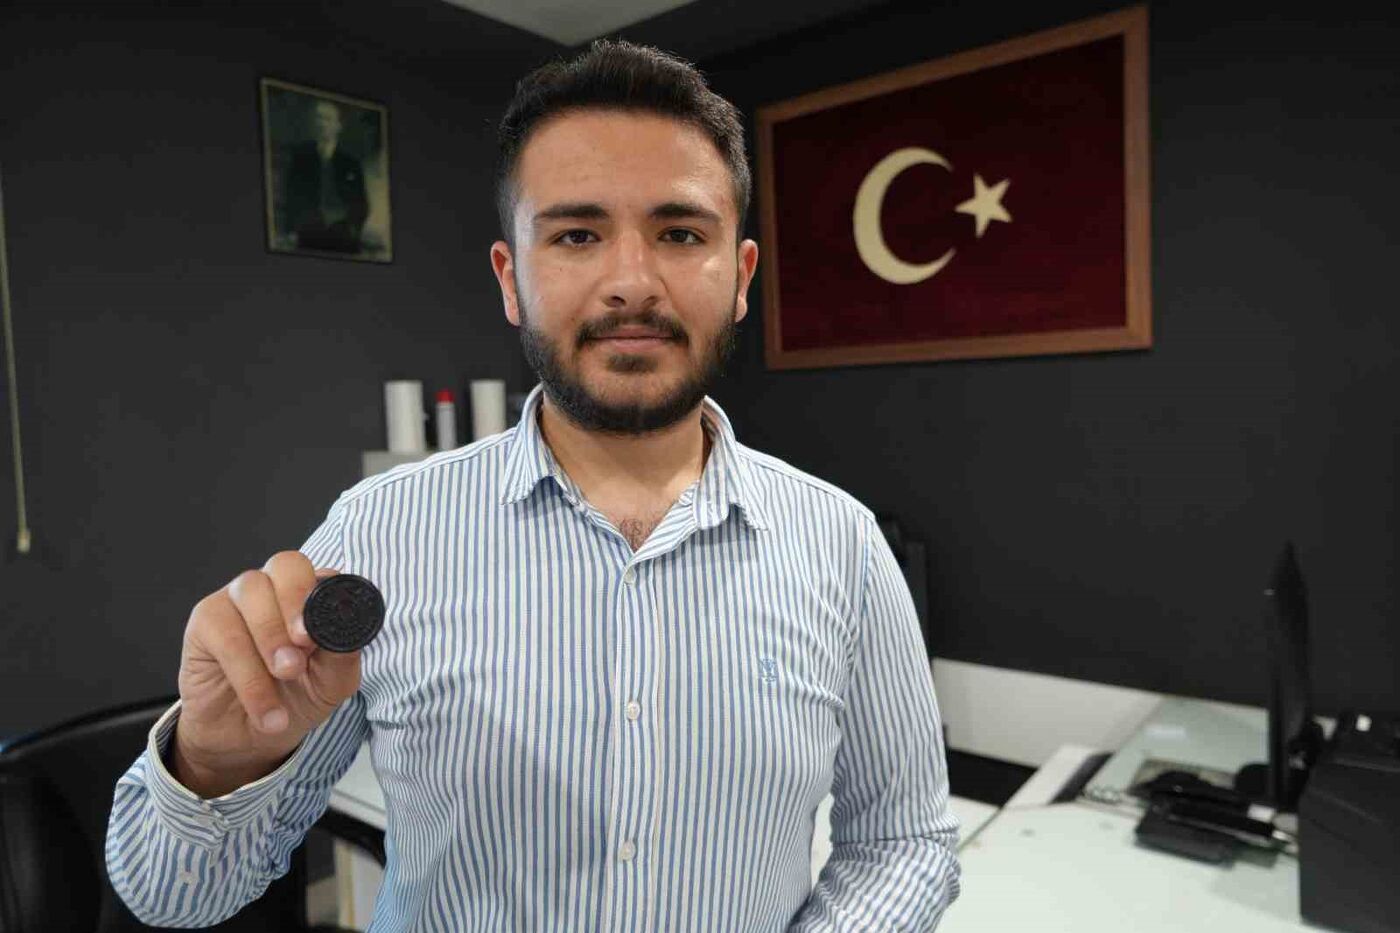 Türkiye’nin en genç muhtarı mührü babasından alarak göreve başladı